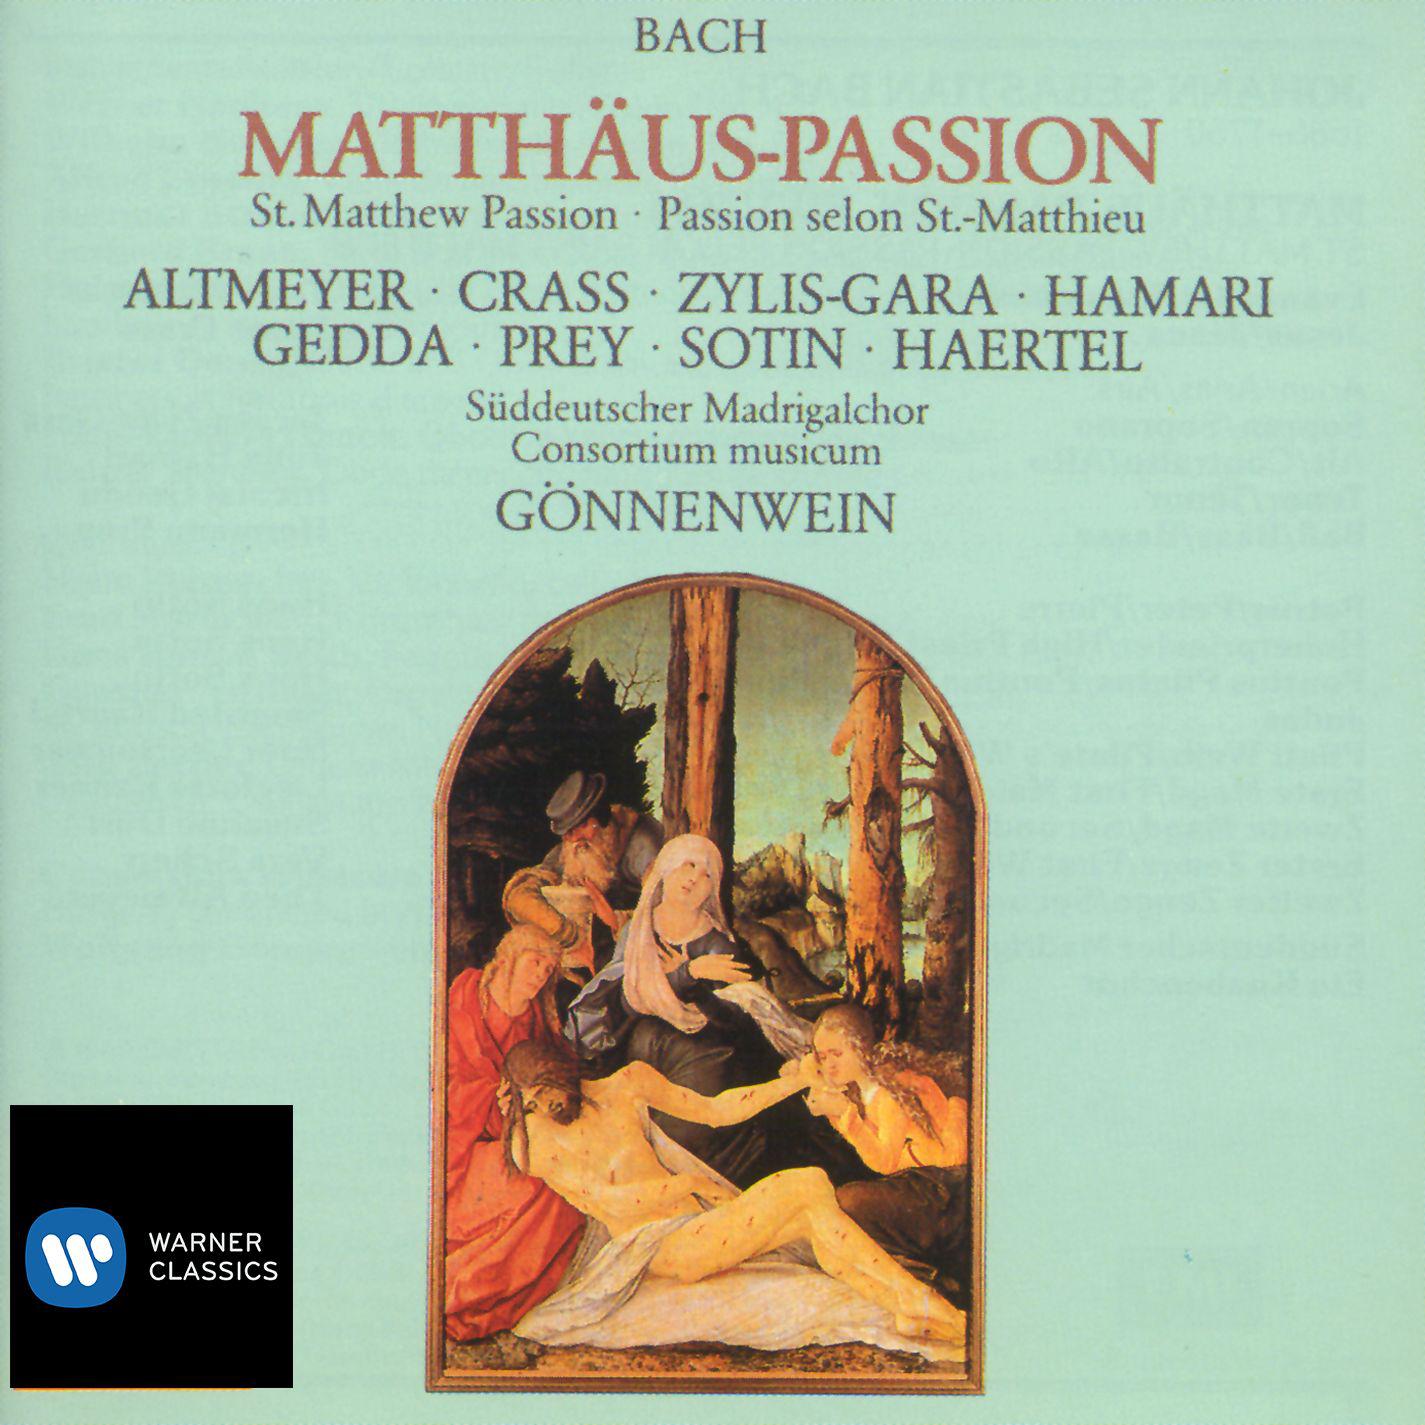 Consortium Musicum - Matthäus-Passion, BWV 244, Pt. 2:No. 52, Aria. 